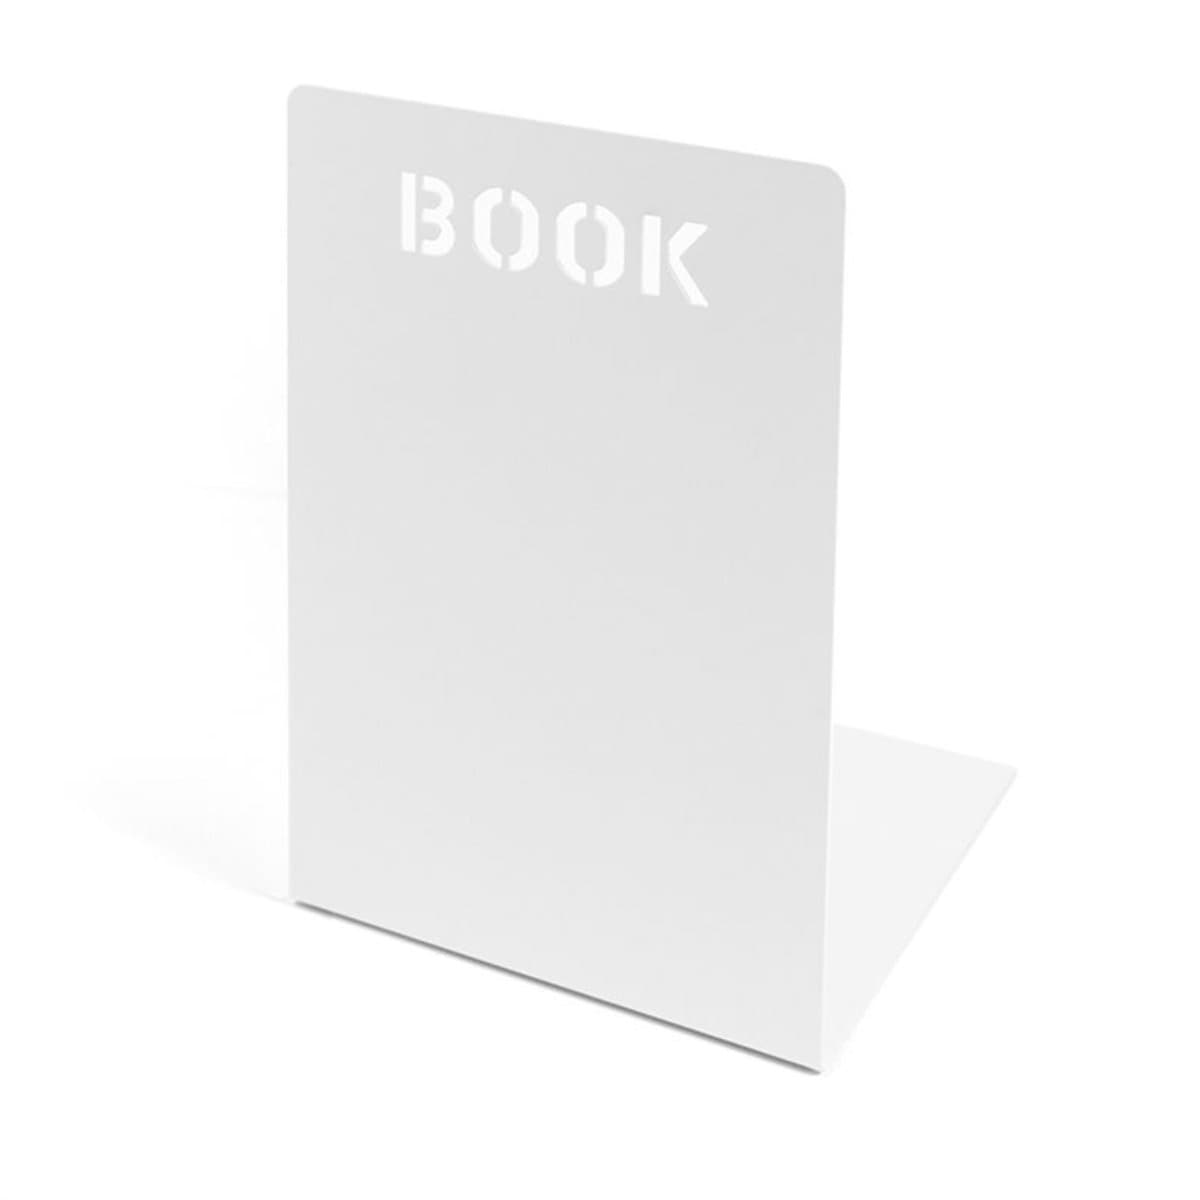 Trendform Bookend BOOK, White